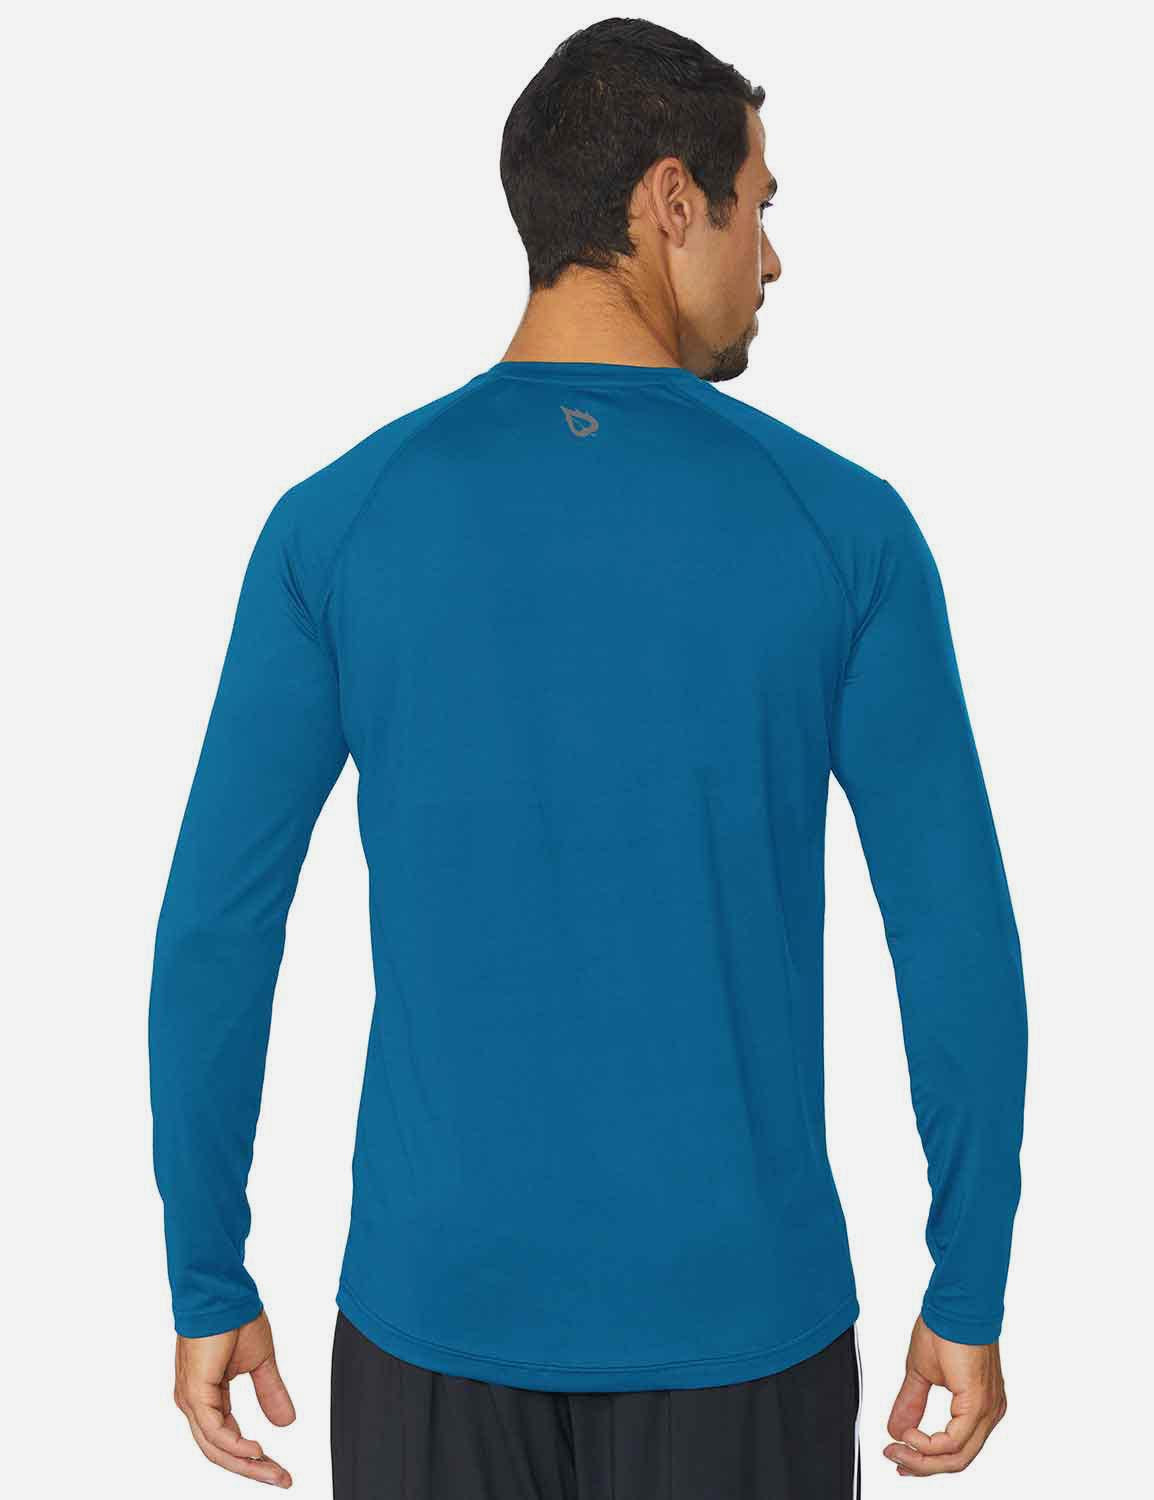 Baleaf Men's Workout Crew-Neck Slim-Cut Long Sleeved Shirt abd195 Blue Back